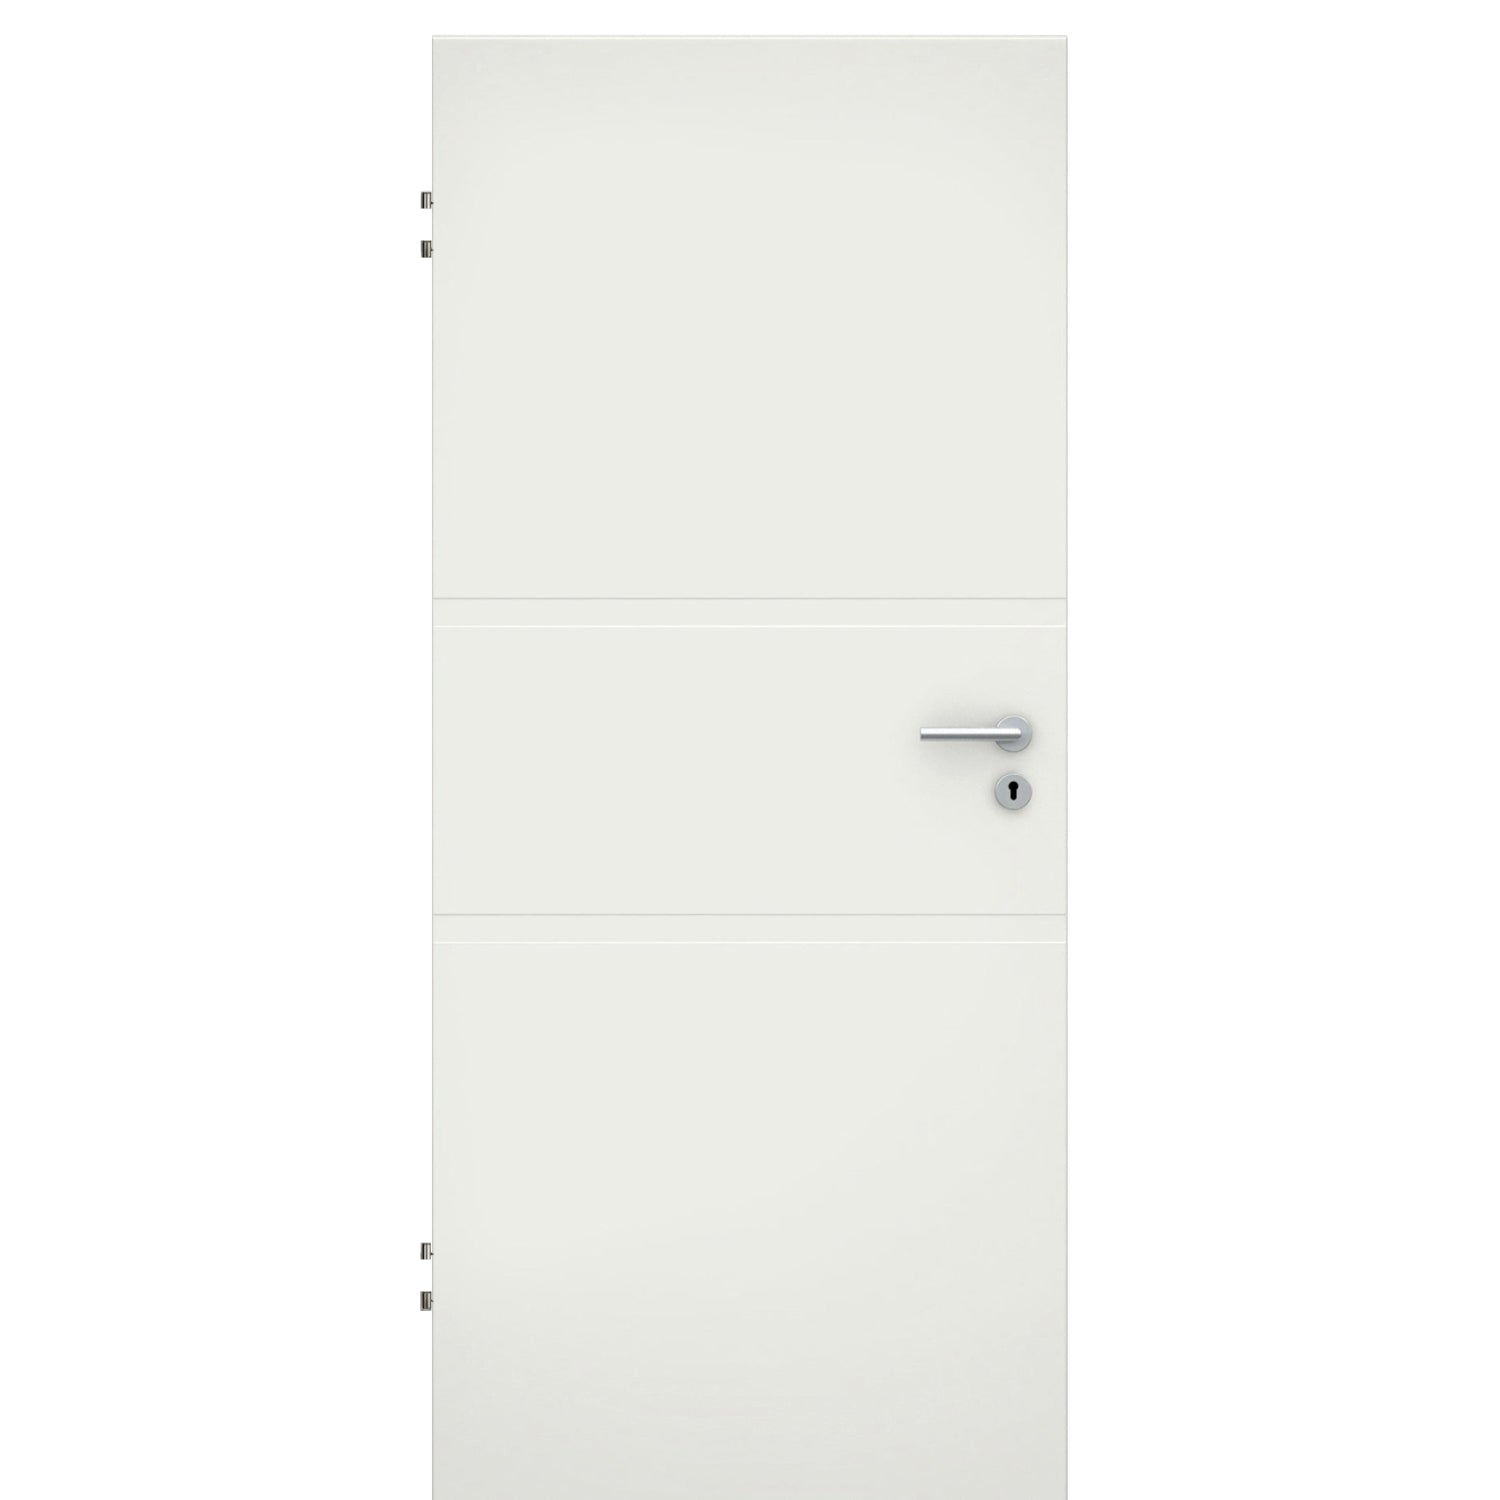 Wohnungseingangstür soft-weiß 2 breite Rillen Eckkante SK2 / KK3 - Modell Designtür QB21